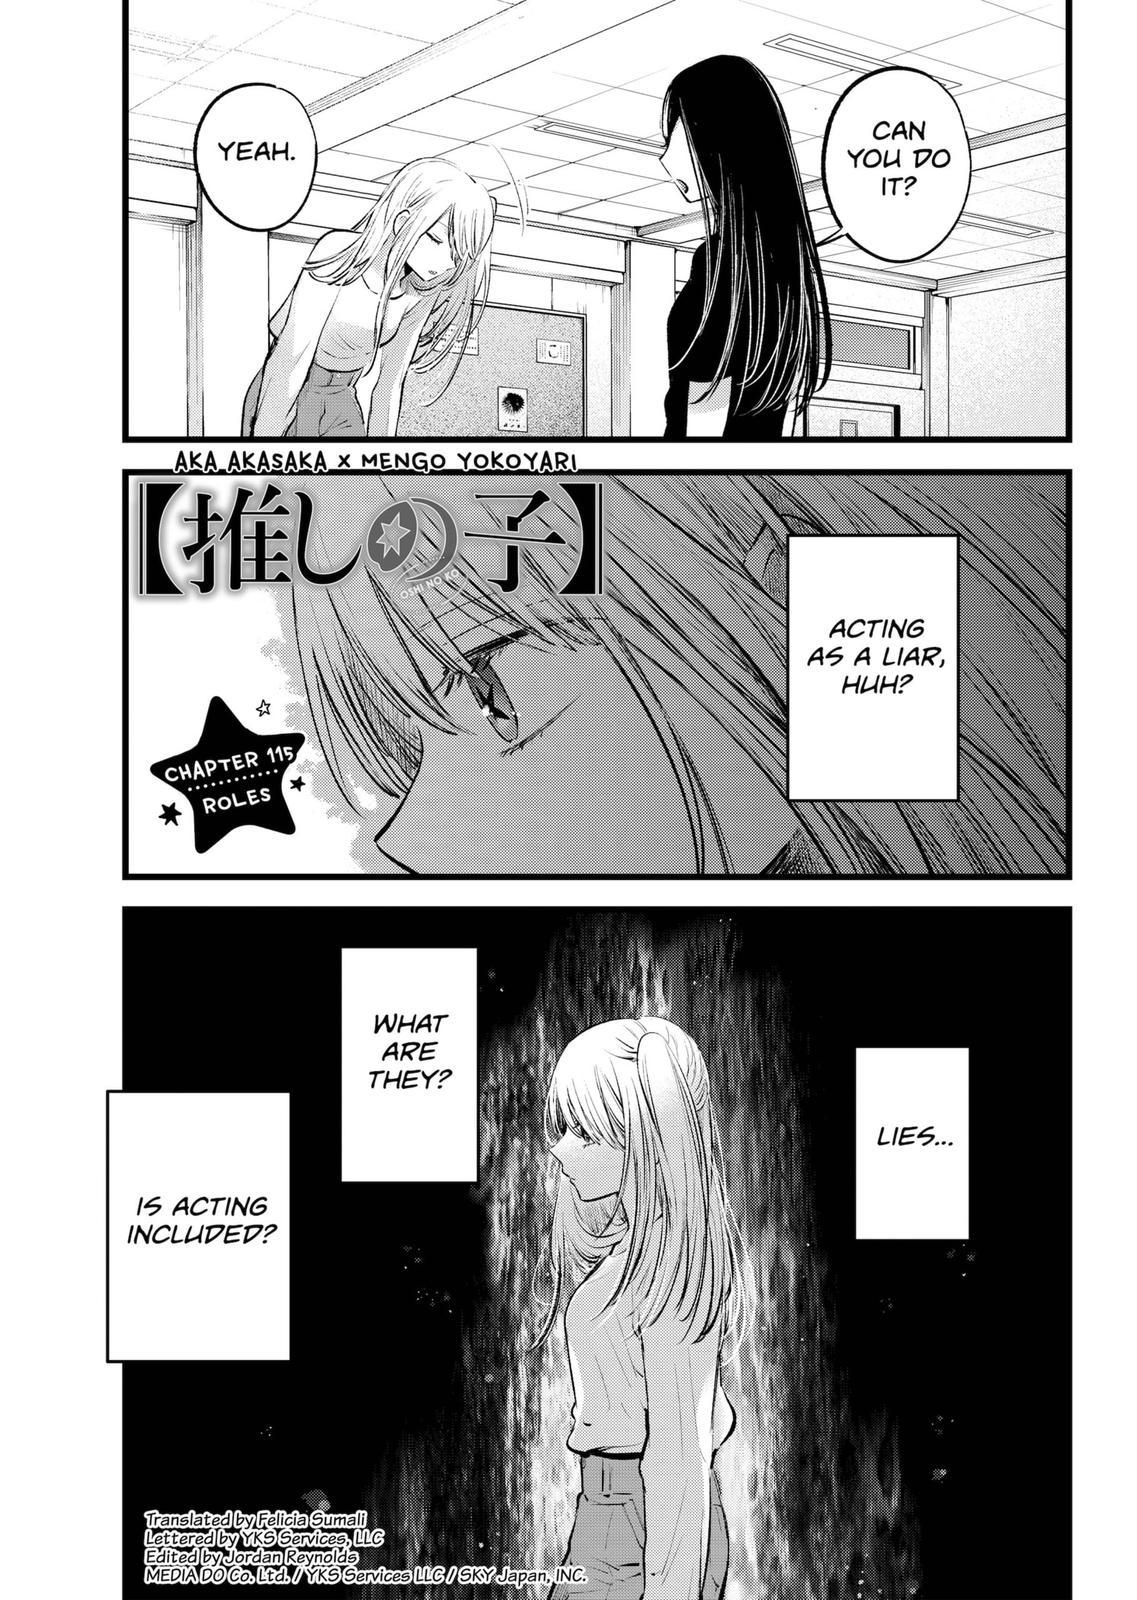 Oshi no ko, Chapter 127 - Oshi no ko Manga Online